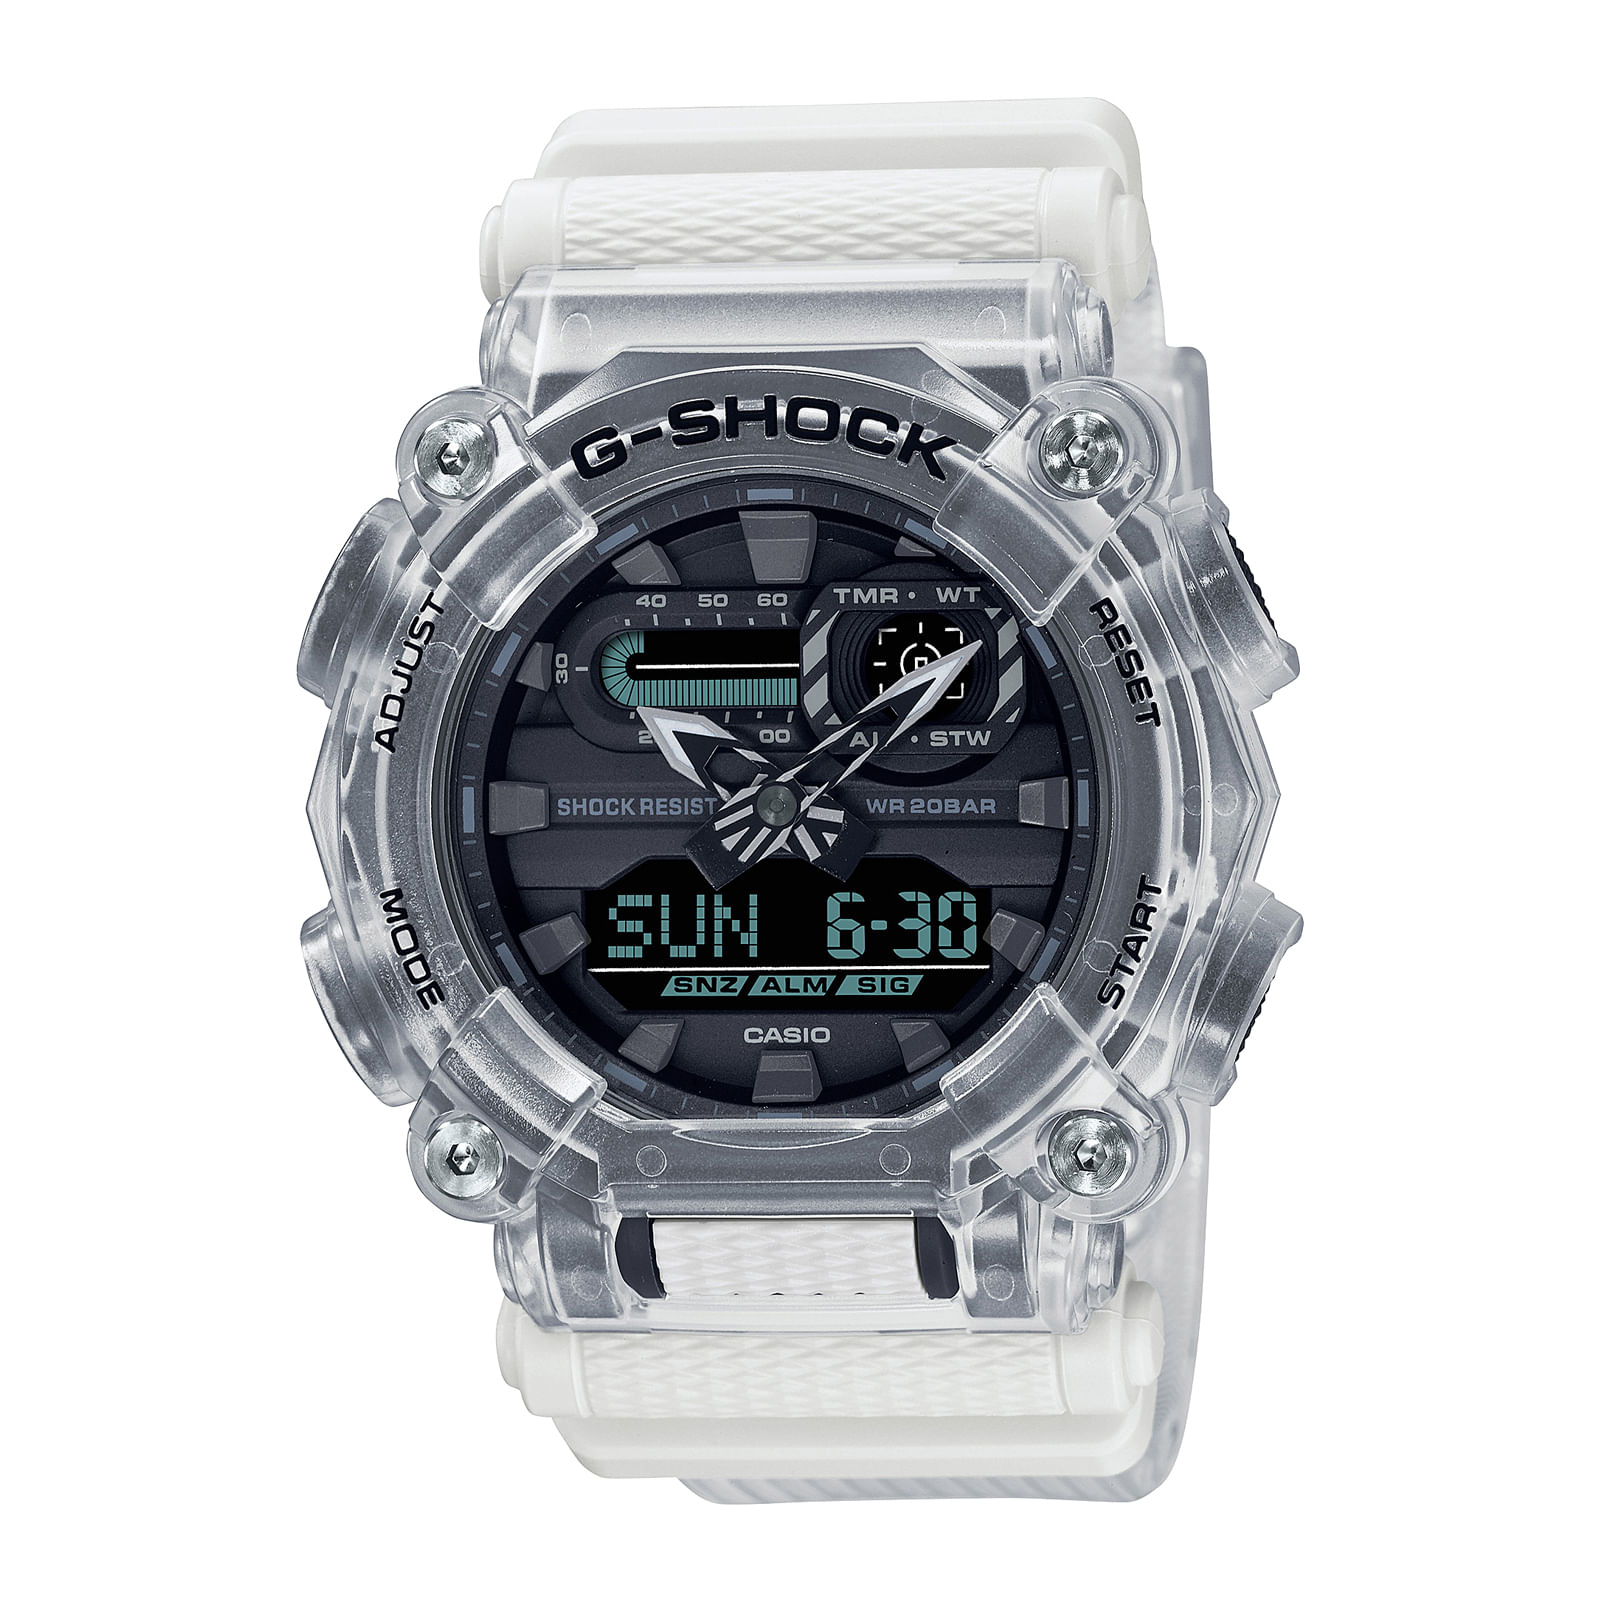 Reloj G-SHOCK GA-900SKL-7A Resina Hombre Transparente